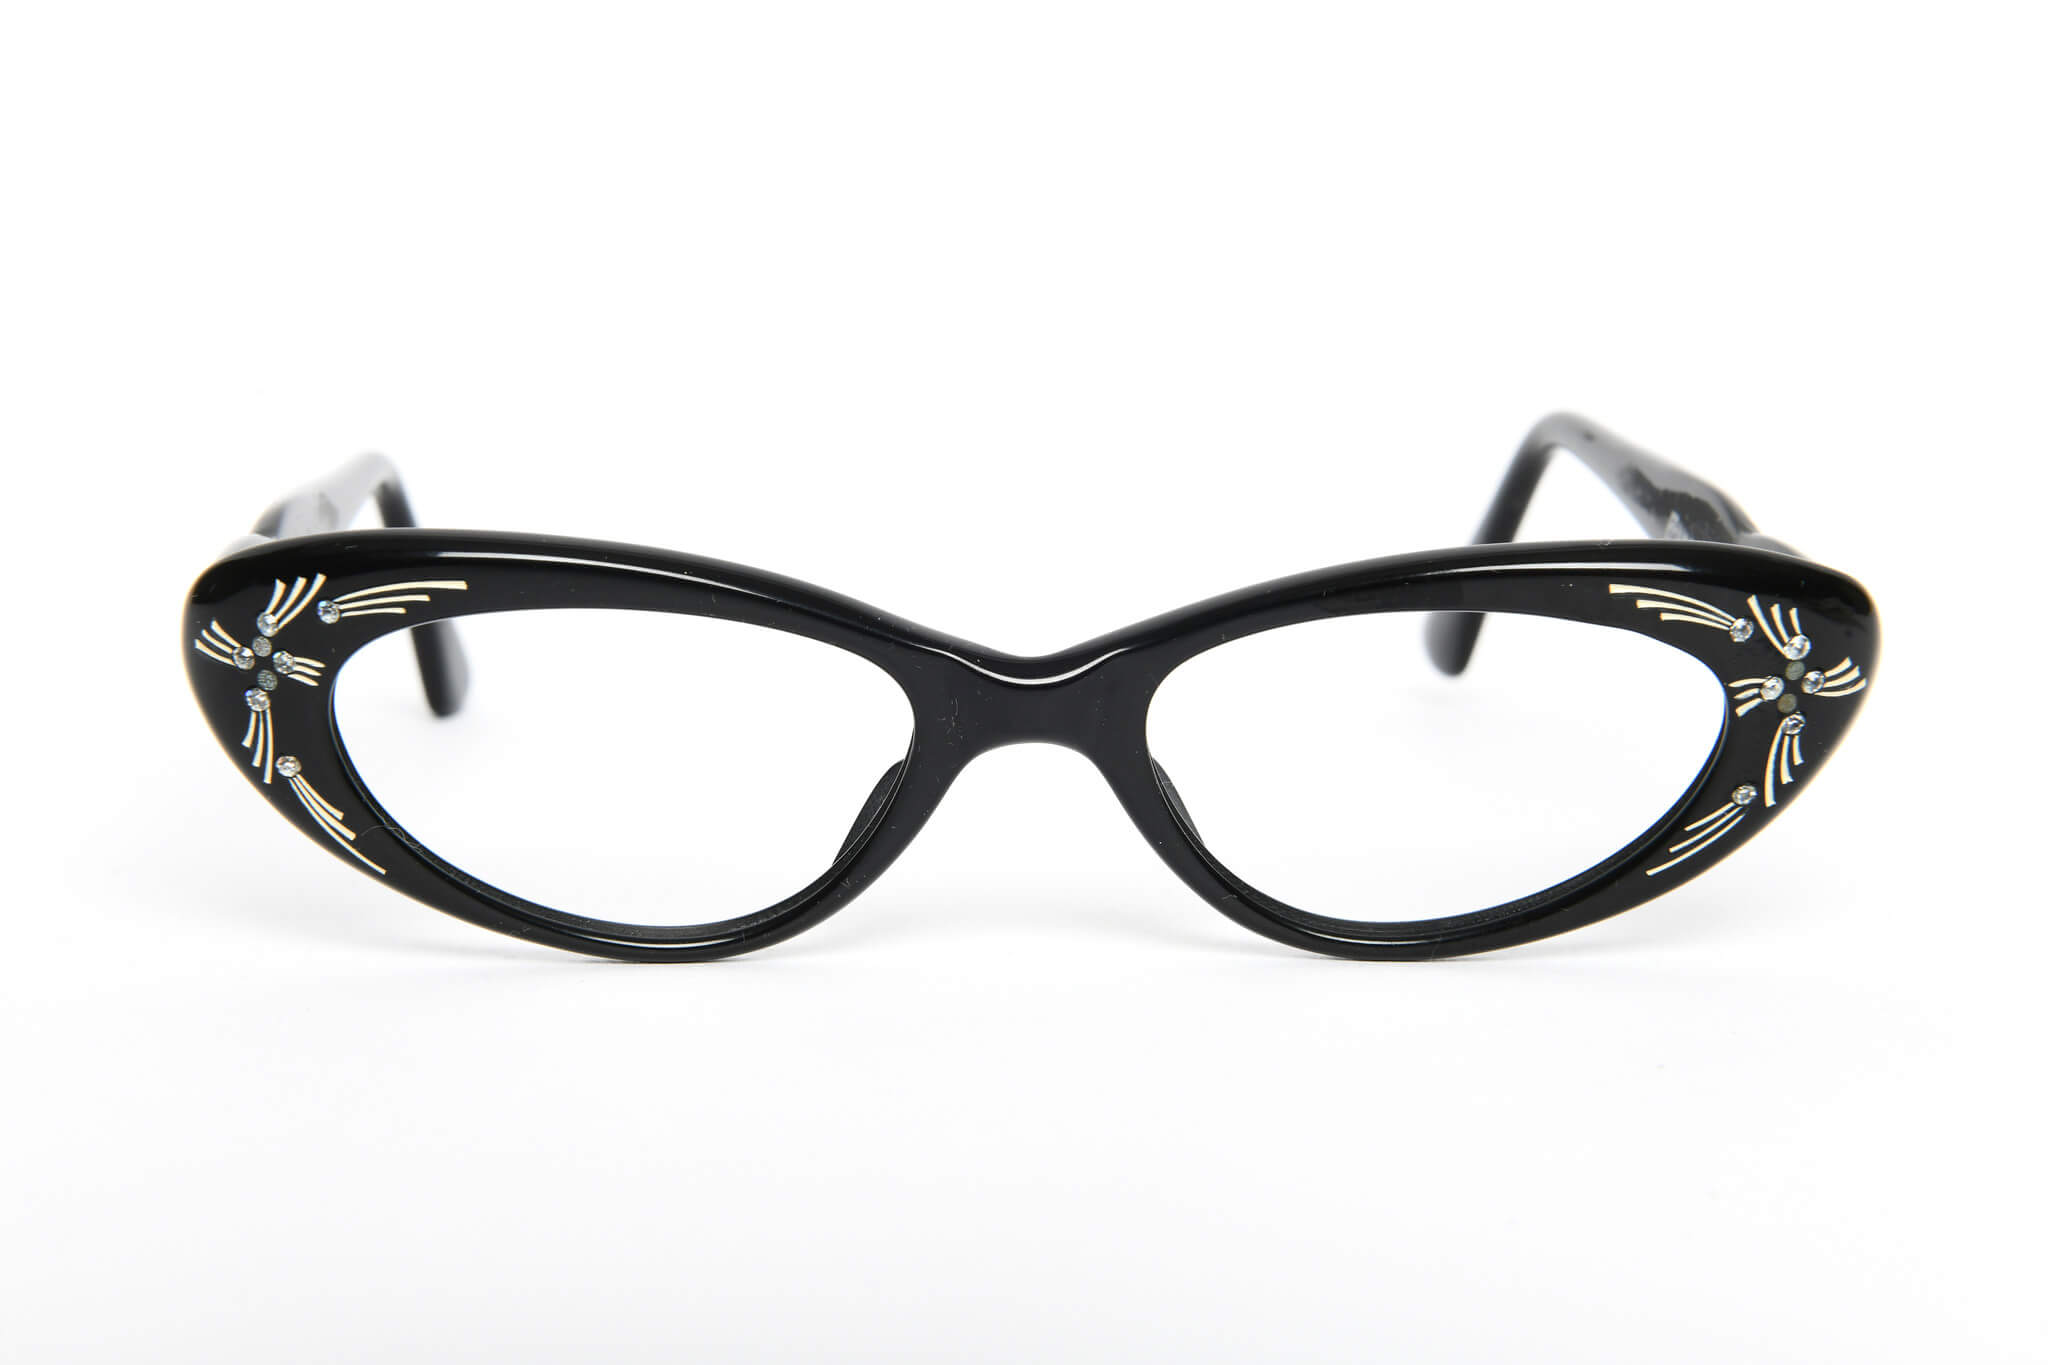 1950s black cat eye glasses. Vintage glasses. Black 50s glasses. 